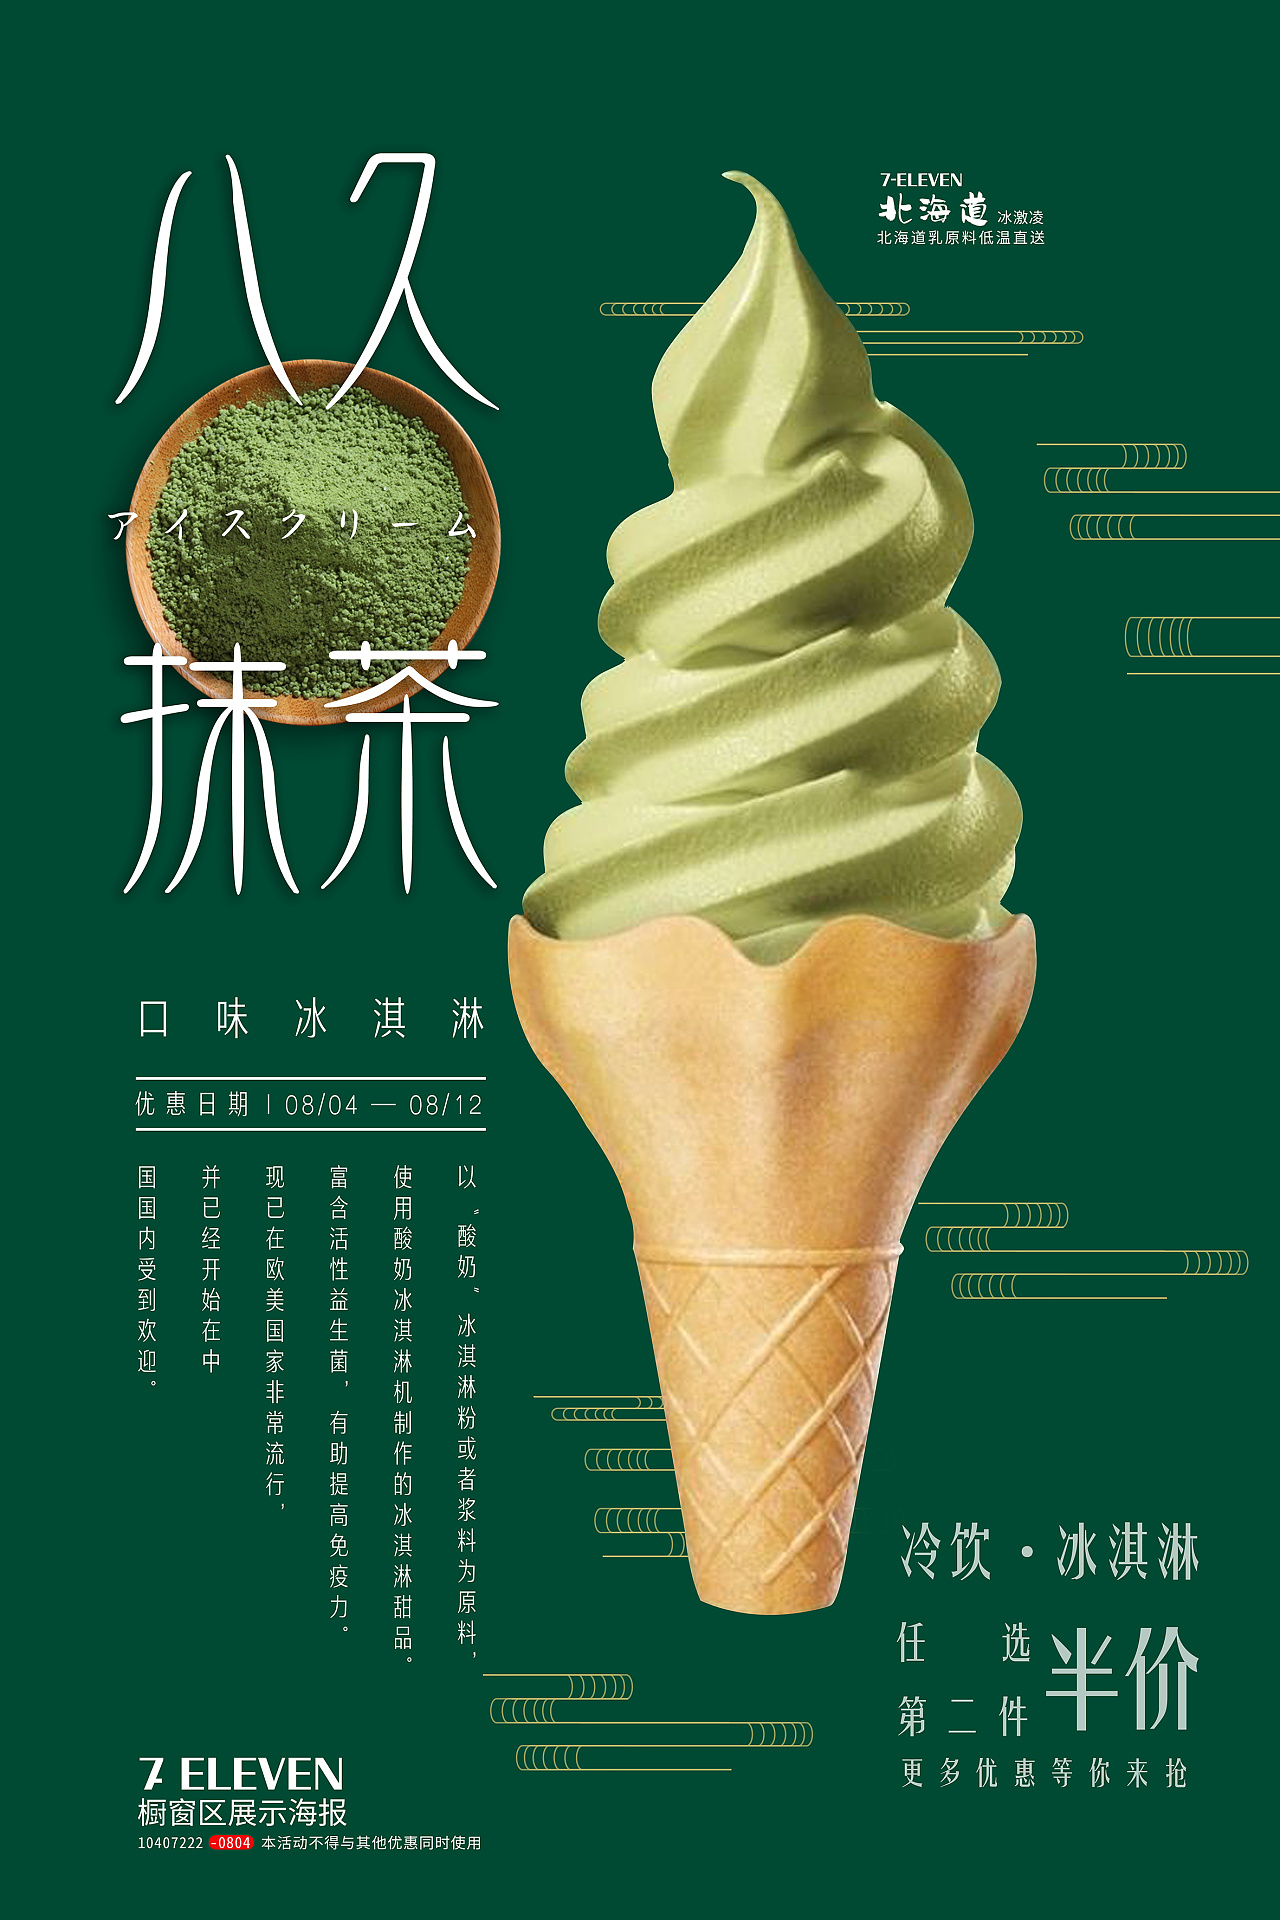 日式创意抹茶冰淇淋海报图片素材-编号31335940-图行天下